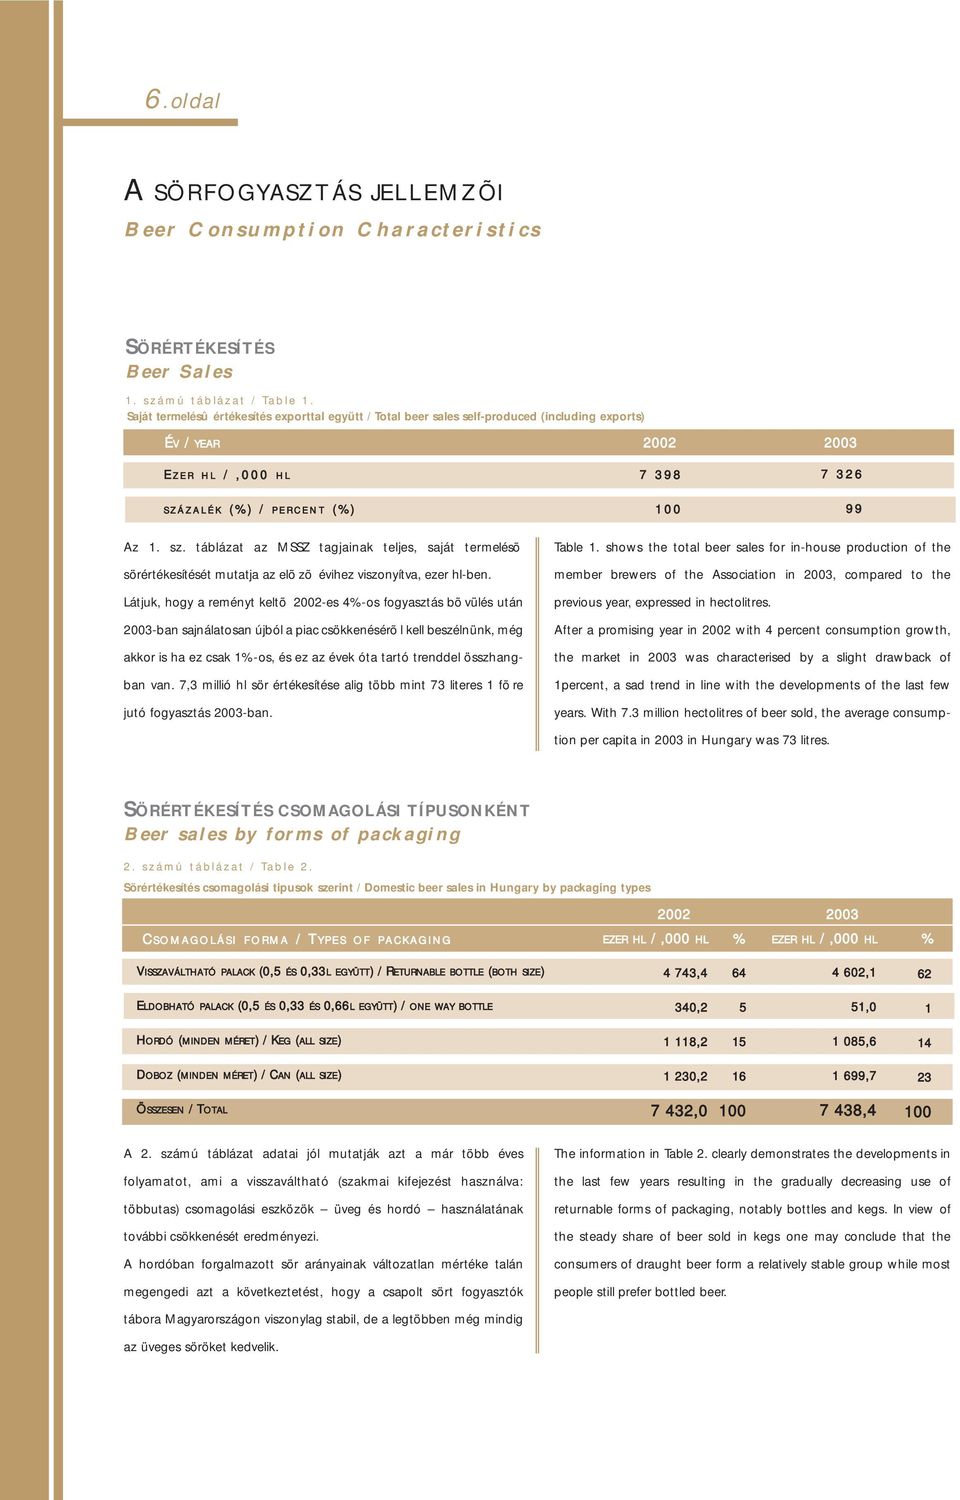 0 7 3 2 6 9 9 Az 1. sz. táblázat az MSSZ tagjainak teljes, saját termelésõ sörértékesítését mutatja az elõzõ évihez viszonyítva, ezer hl-ben.